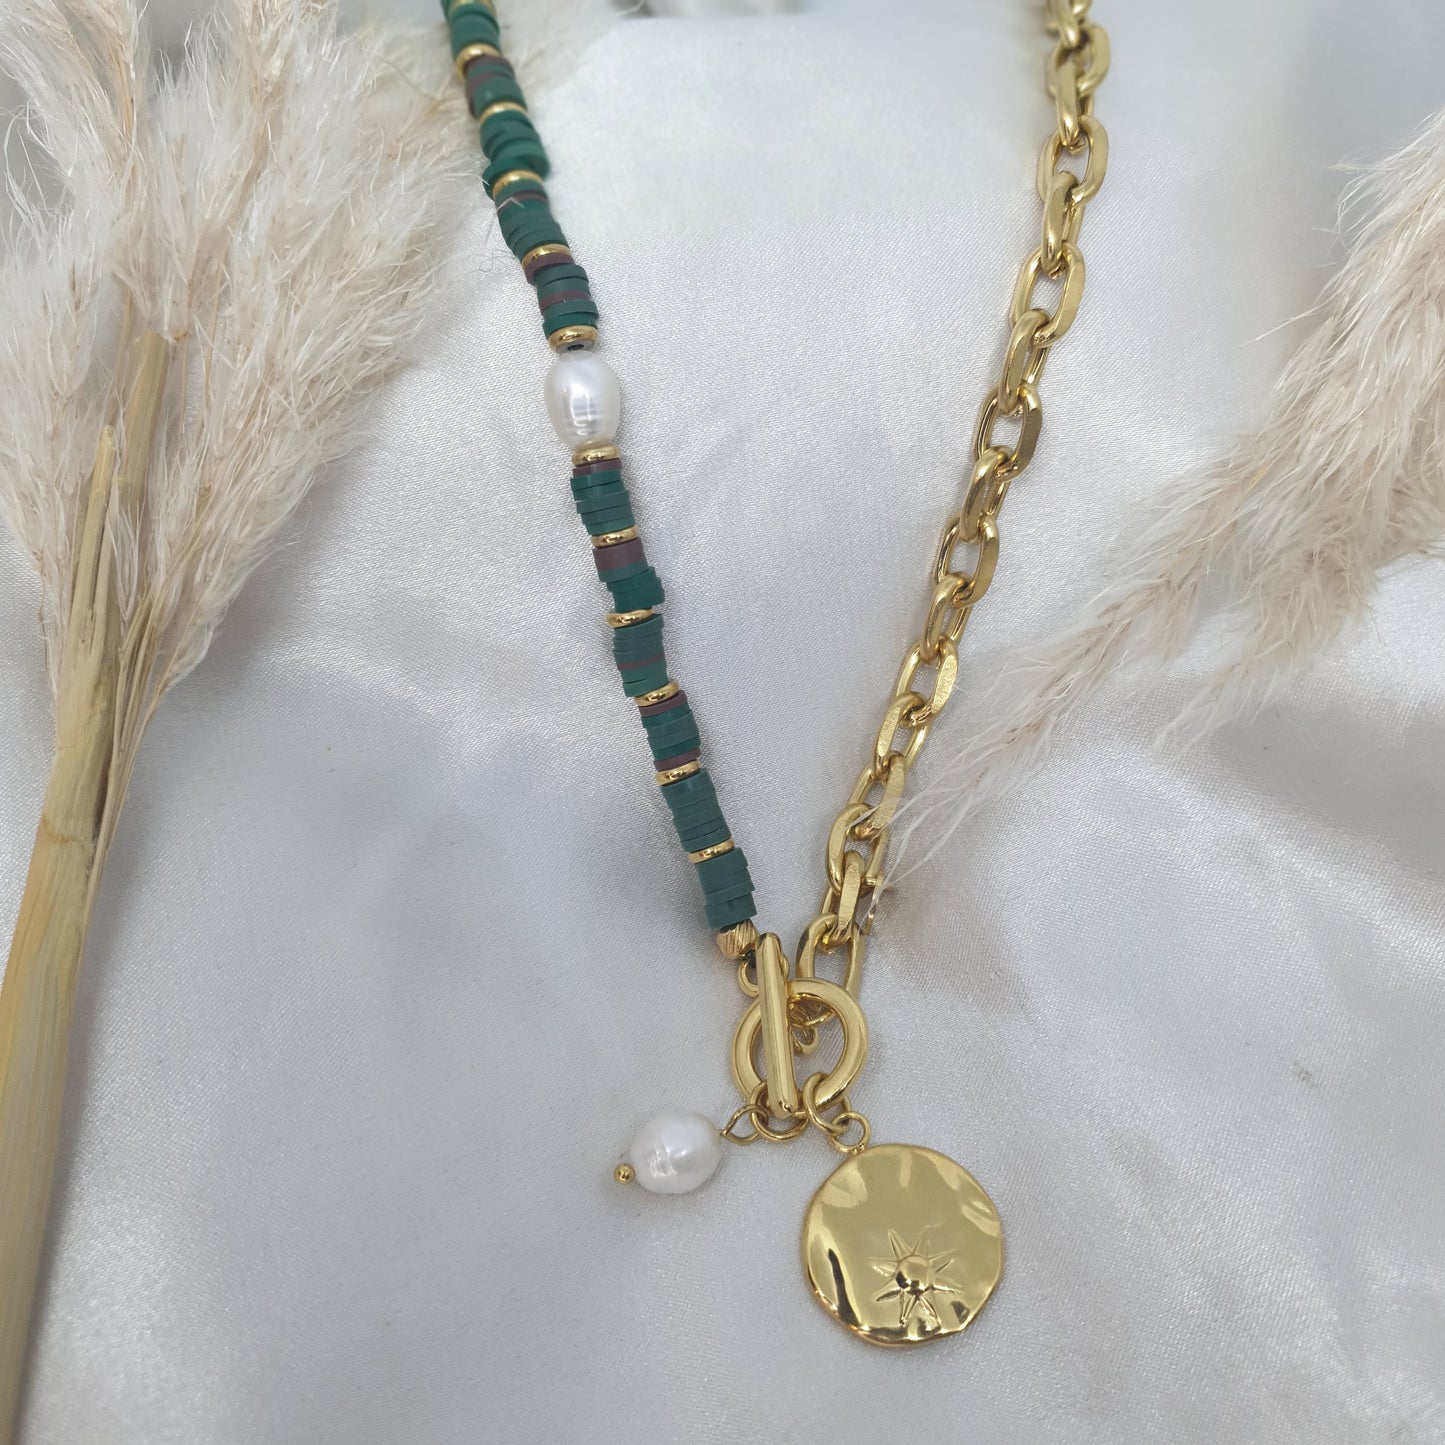 Collier bohème bi couleur perles émeraudes et or en chaîne DOUBLE FACE